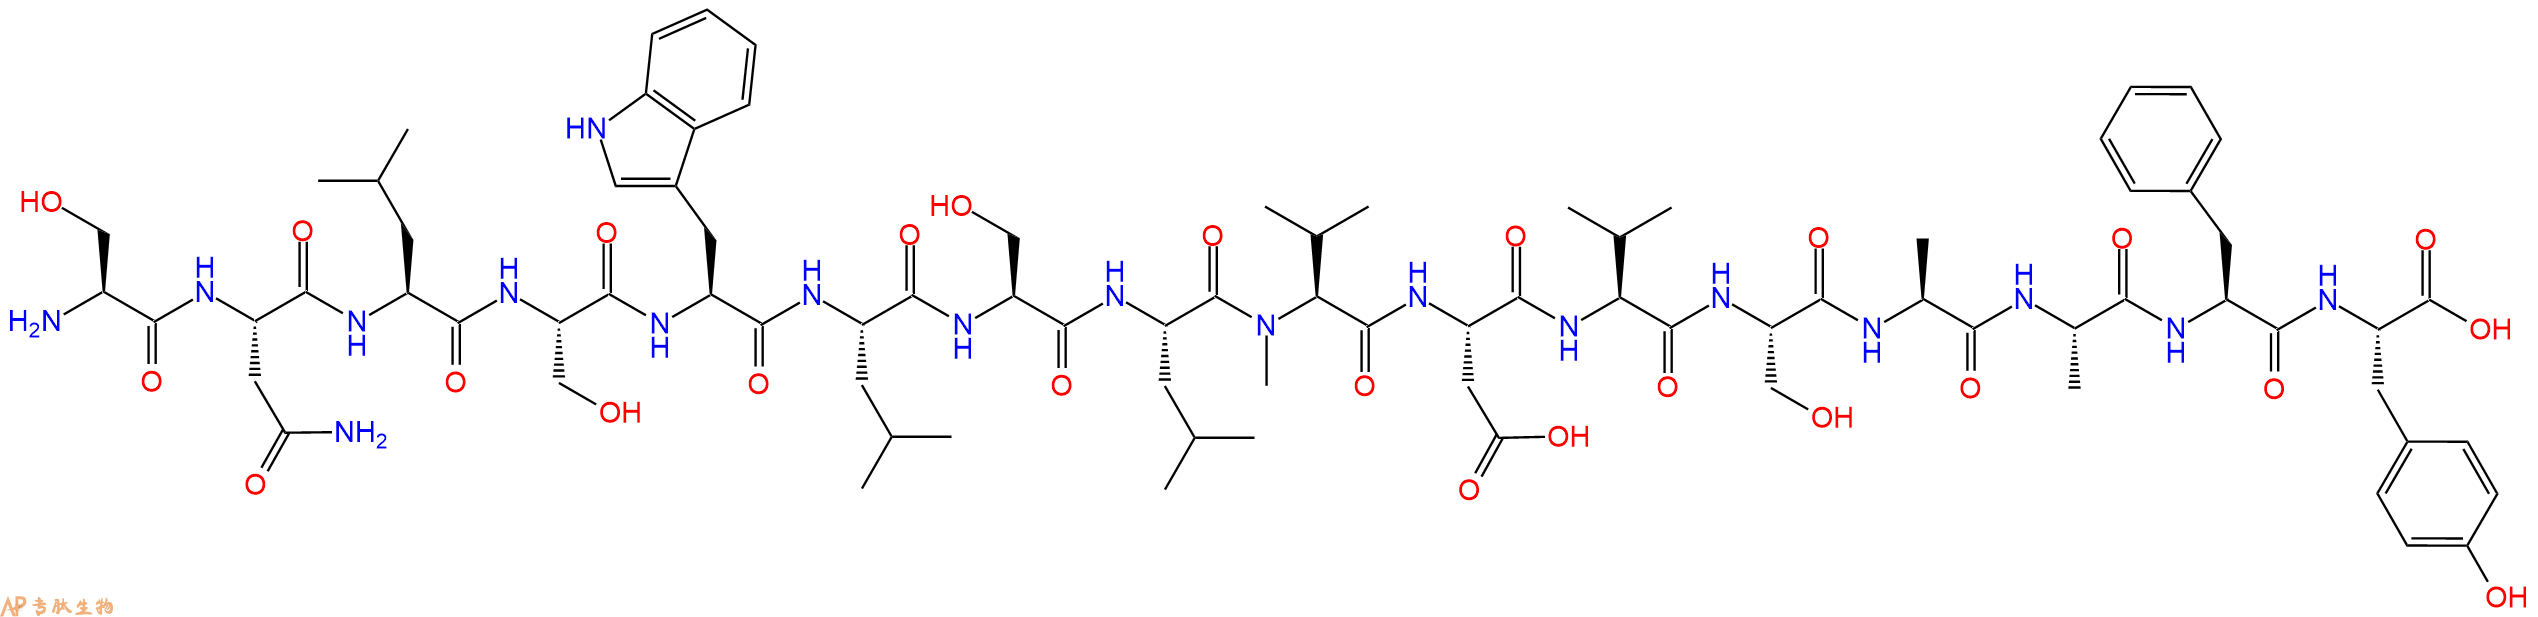 专肽生物产品H2N-Ser-Asn-Leu-Ser-Trp-Leu-Ser-Leu-(NMe)Val-Asp-V